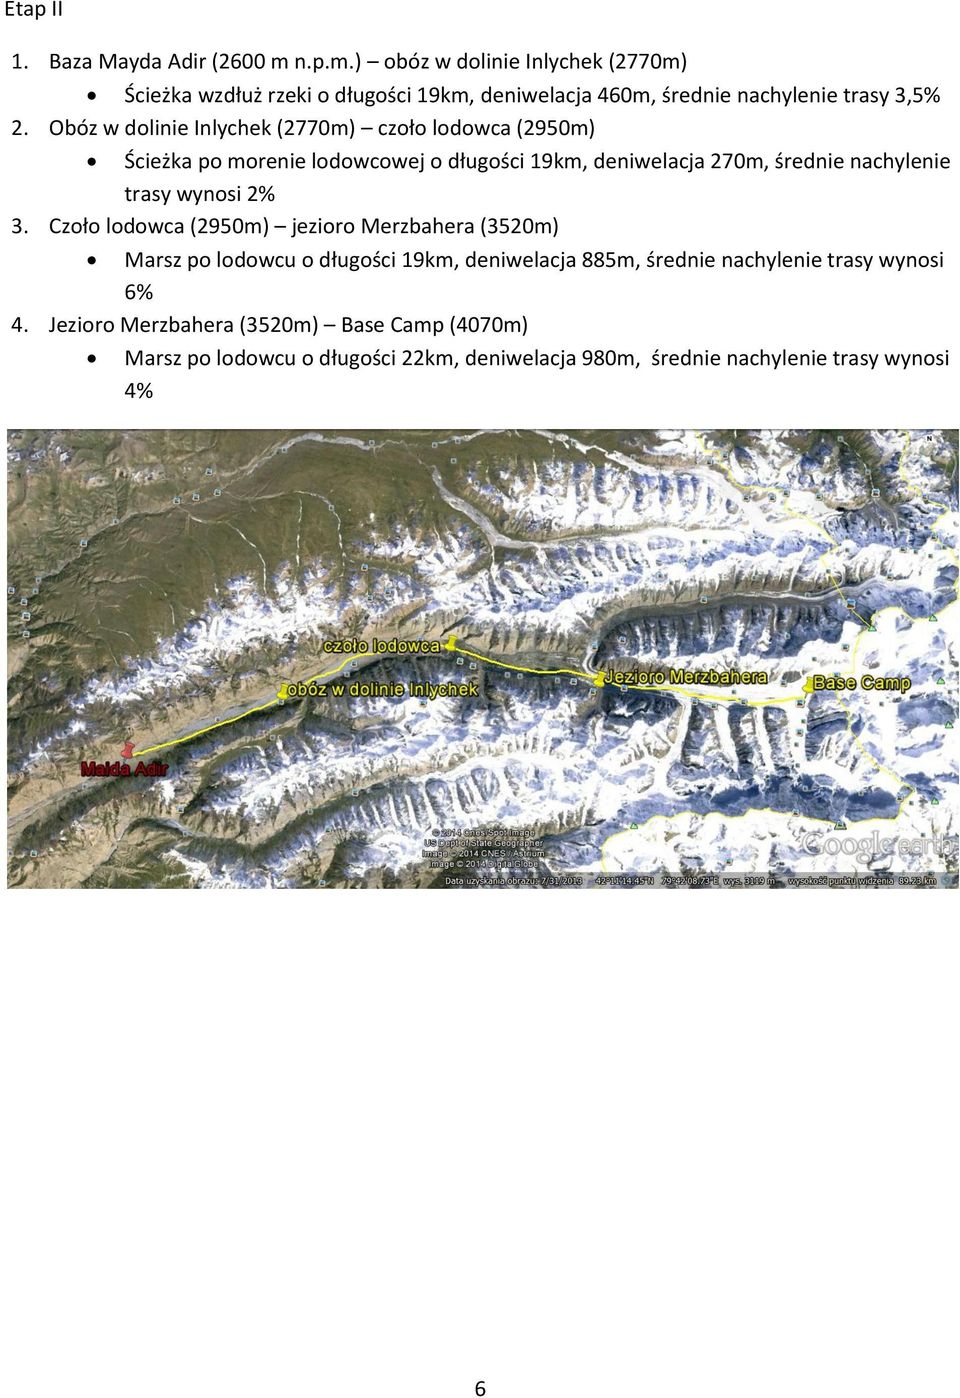 Obóz w dolinie Inlychek (2770m) czoło lodowca (2950m) Ścieżka po morenie lodowcowej o długości 19km, deniwelacja 270m, średnie nachylenie trasy